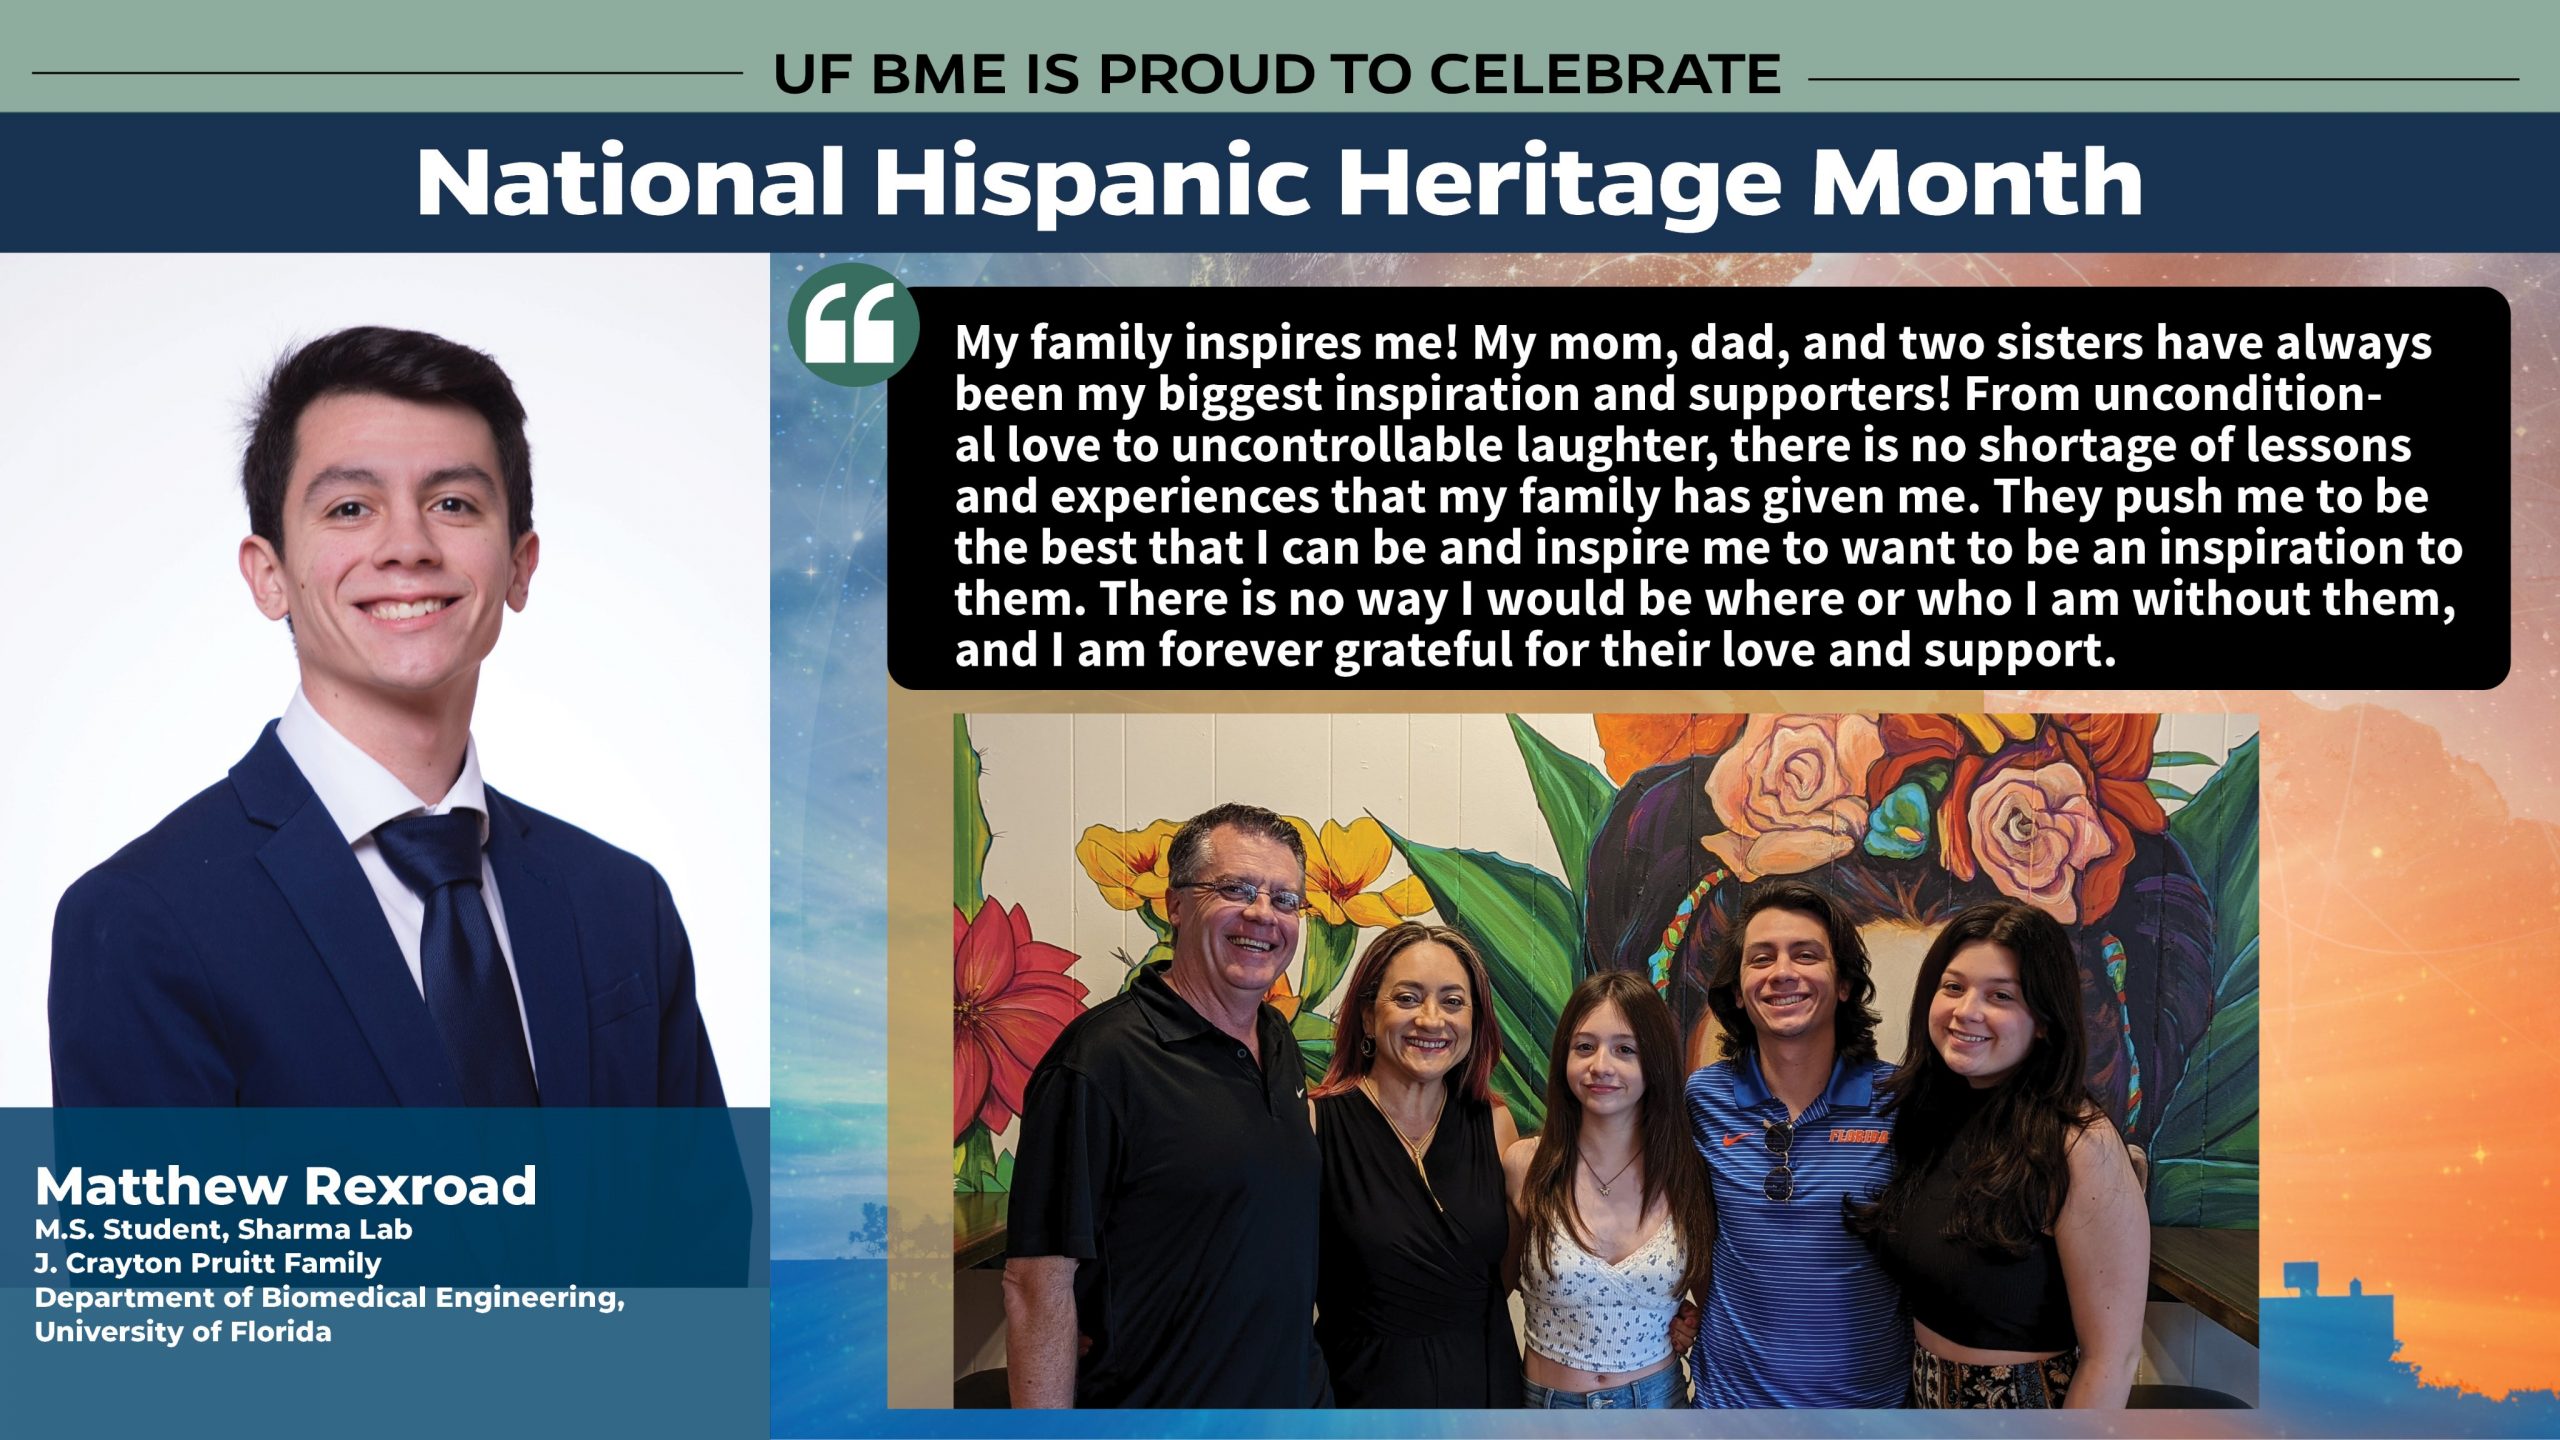 UF BME celebrates Matthew Rexroad during National Hispanic Heritage Month